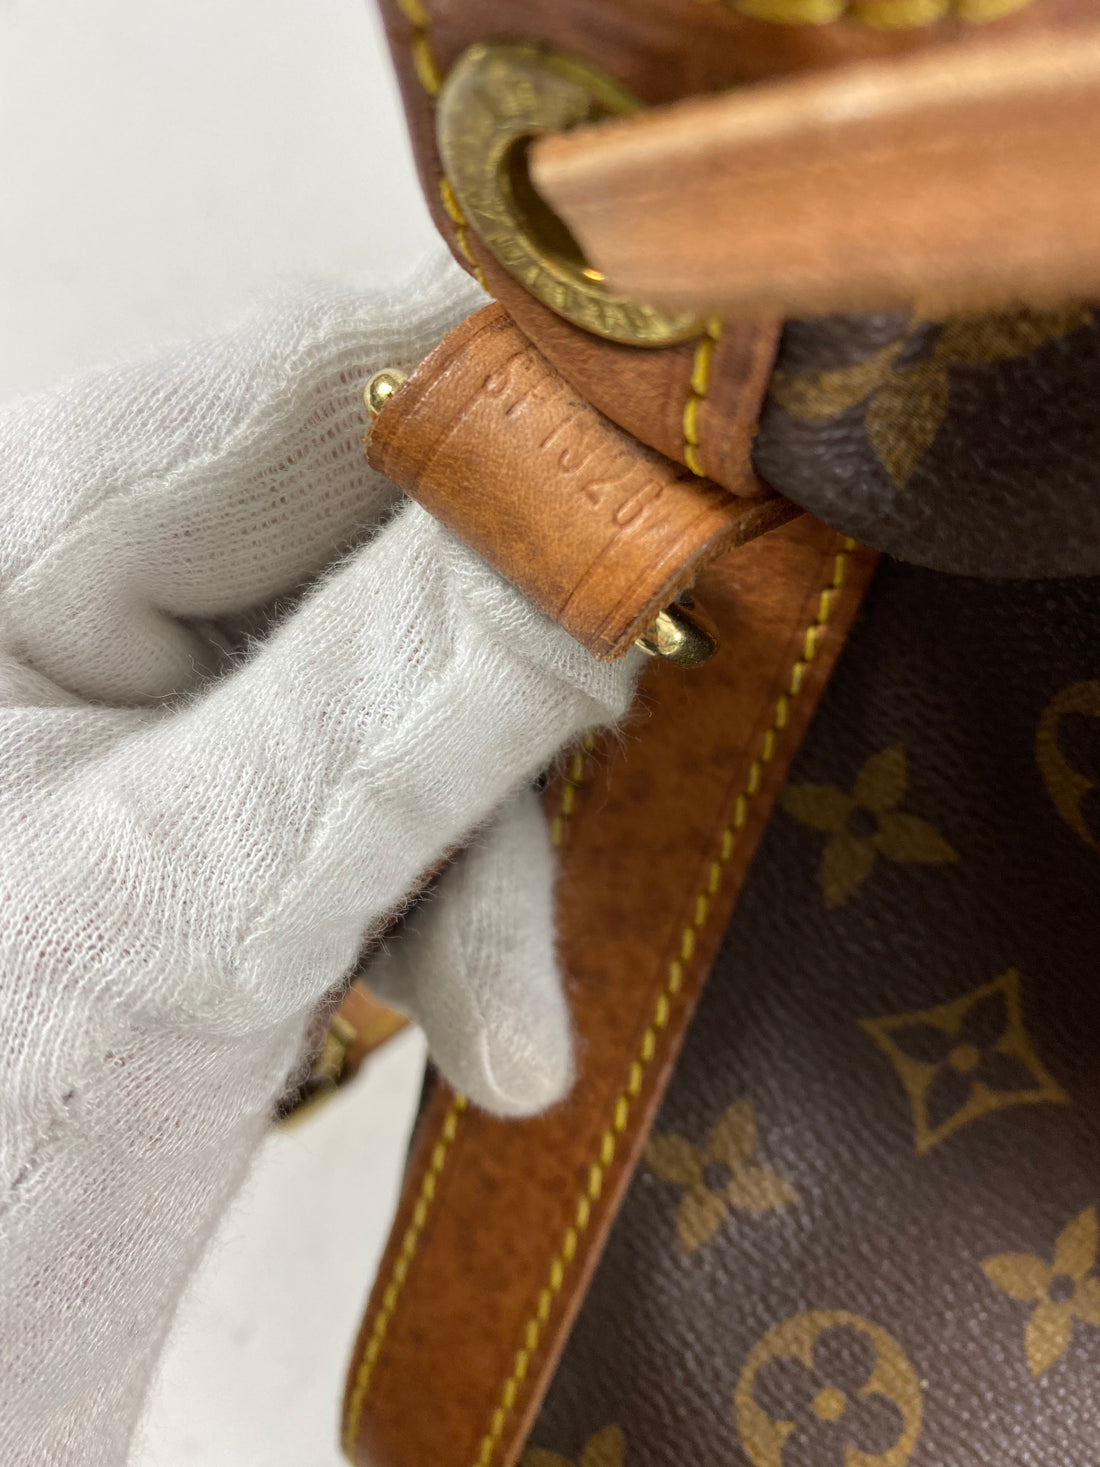 SOLD - Louis Vuitton vintage 1996 noe GM drawstring bag $799 on our website  at imissyouvintage.com #noebag . . #imissyouvintage…